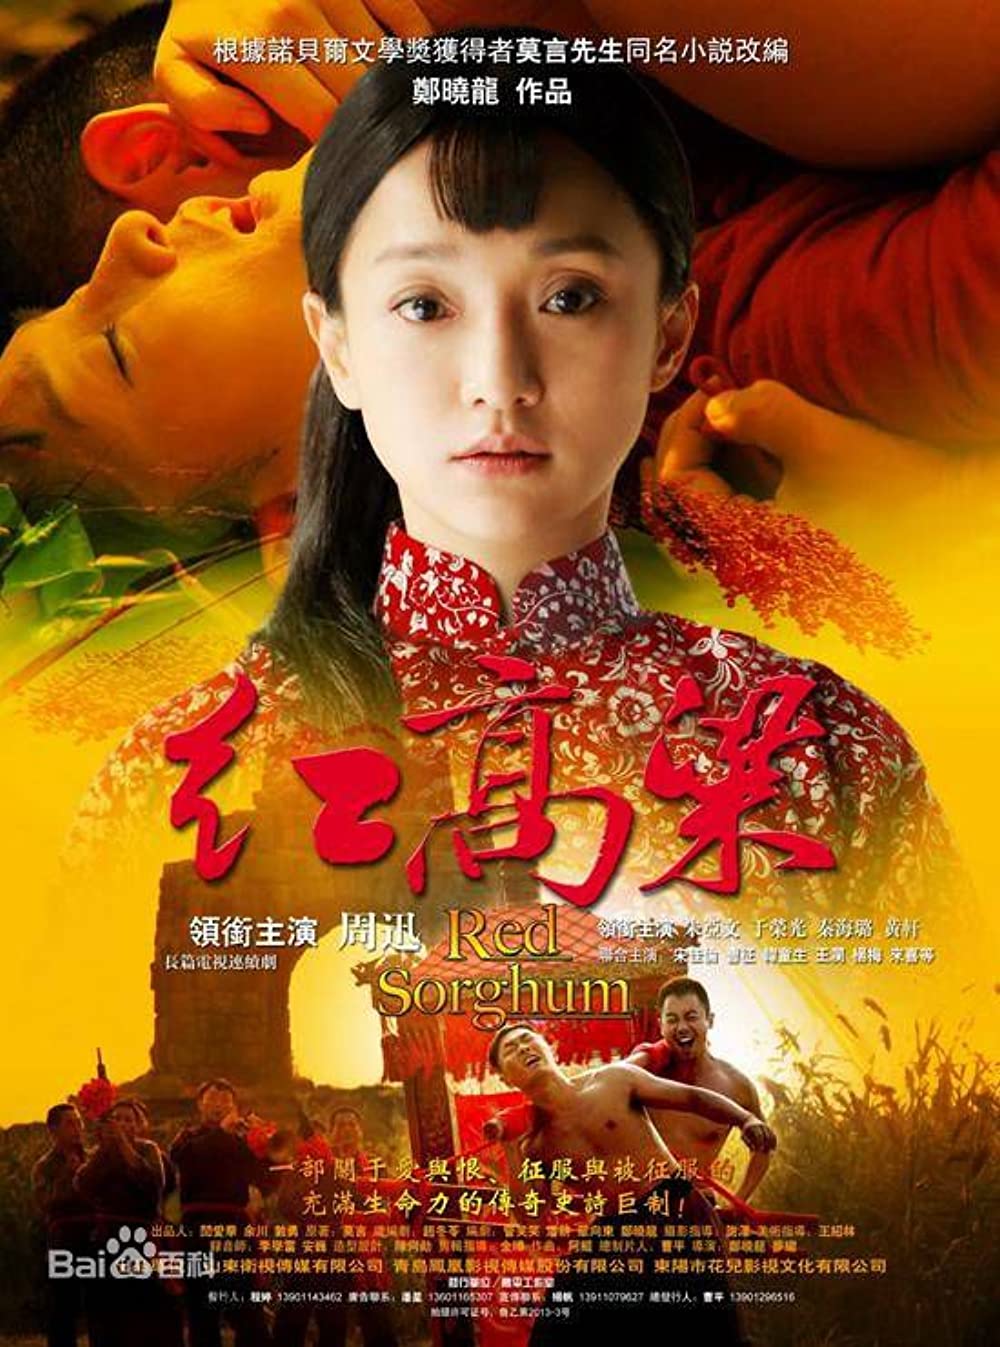 phim cua hoang hien dong 01 - Top 20 bộ phim Trung Quốc chống Nhật hay nhất màn ảnh Hoa ngữ